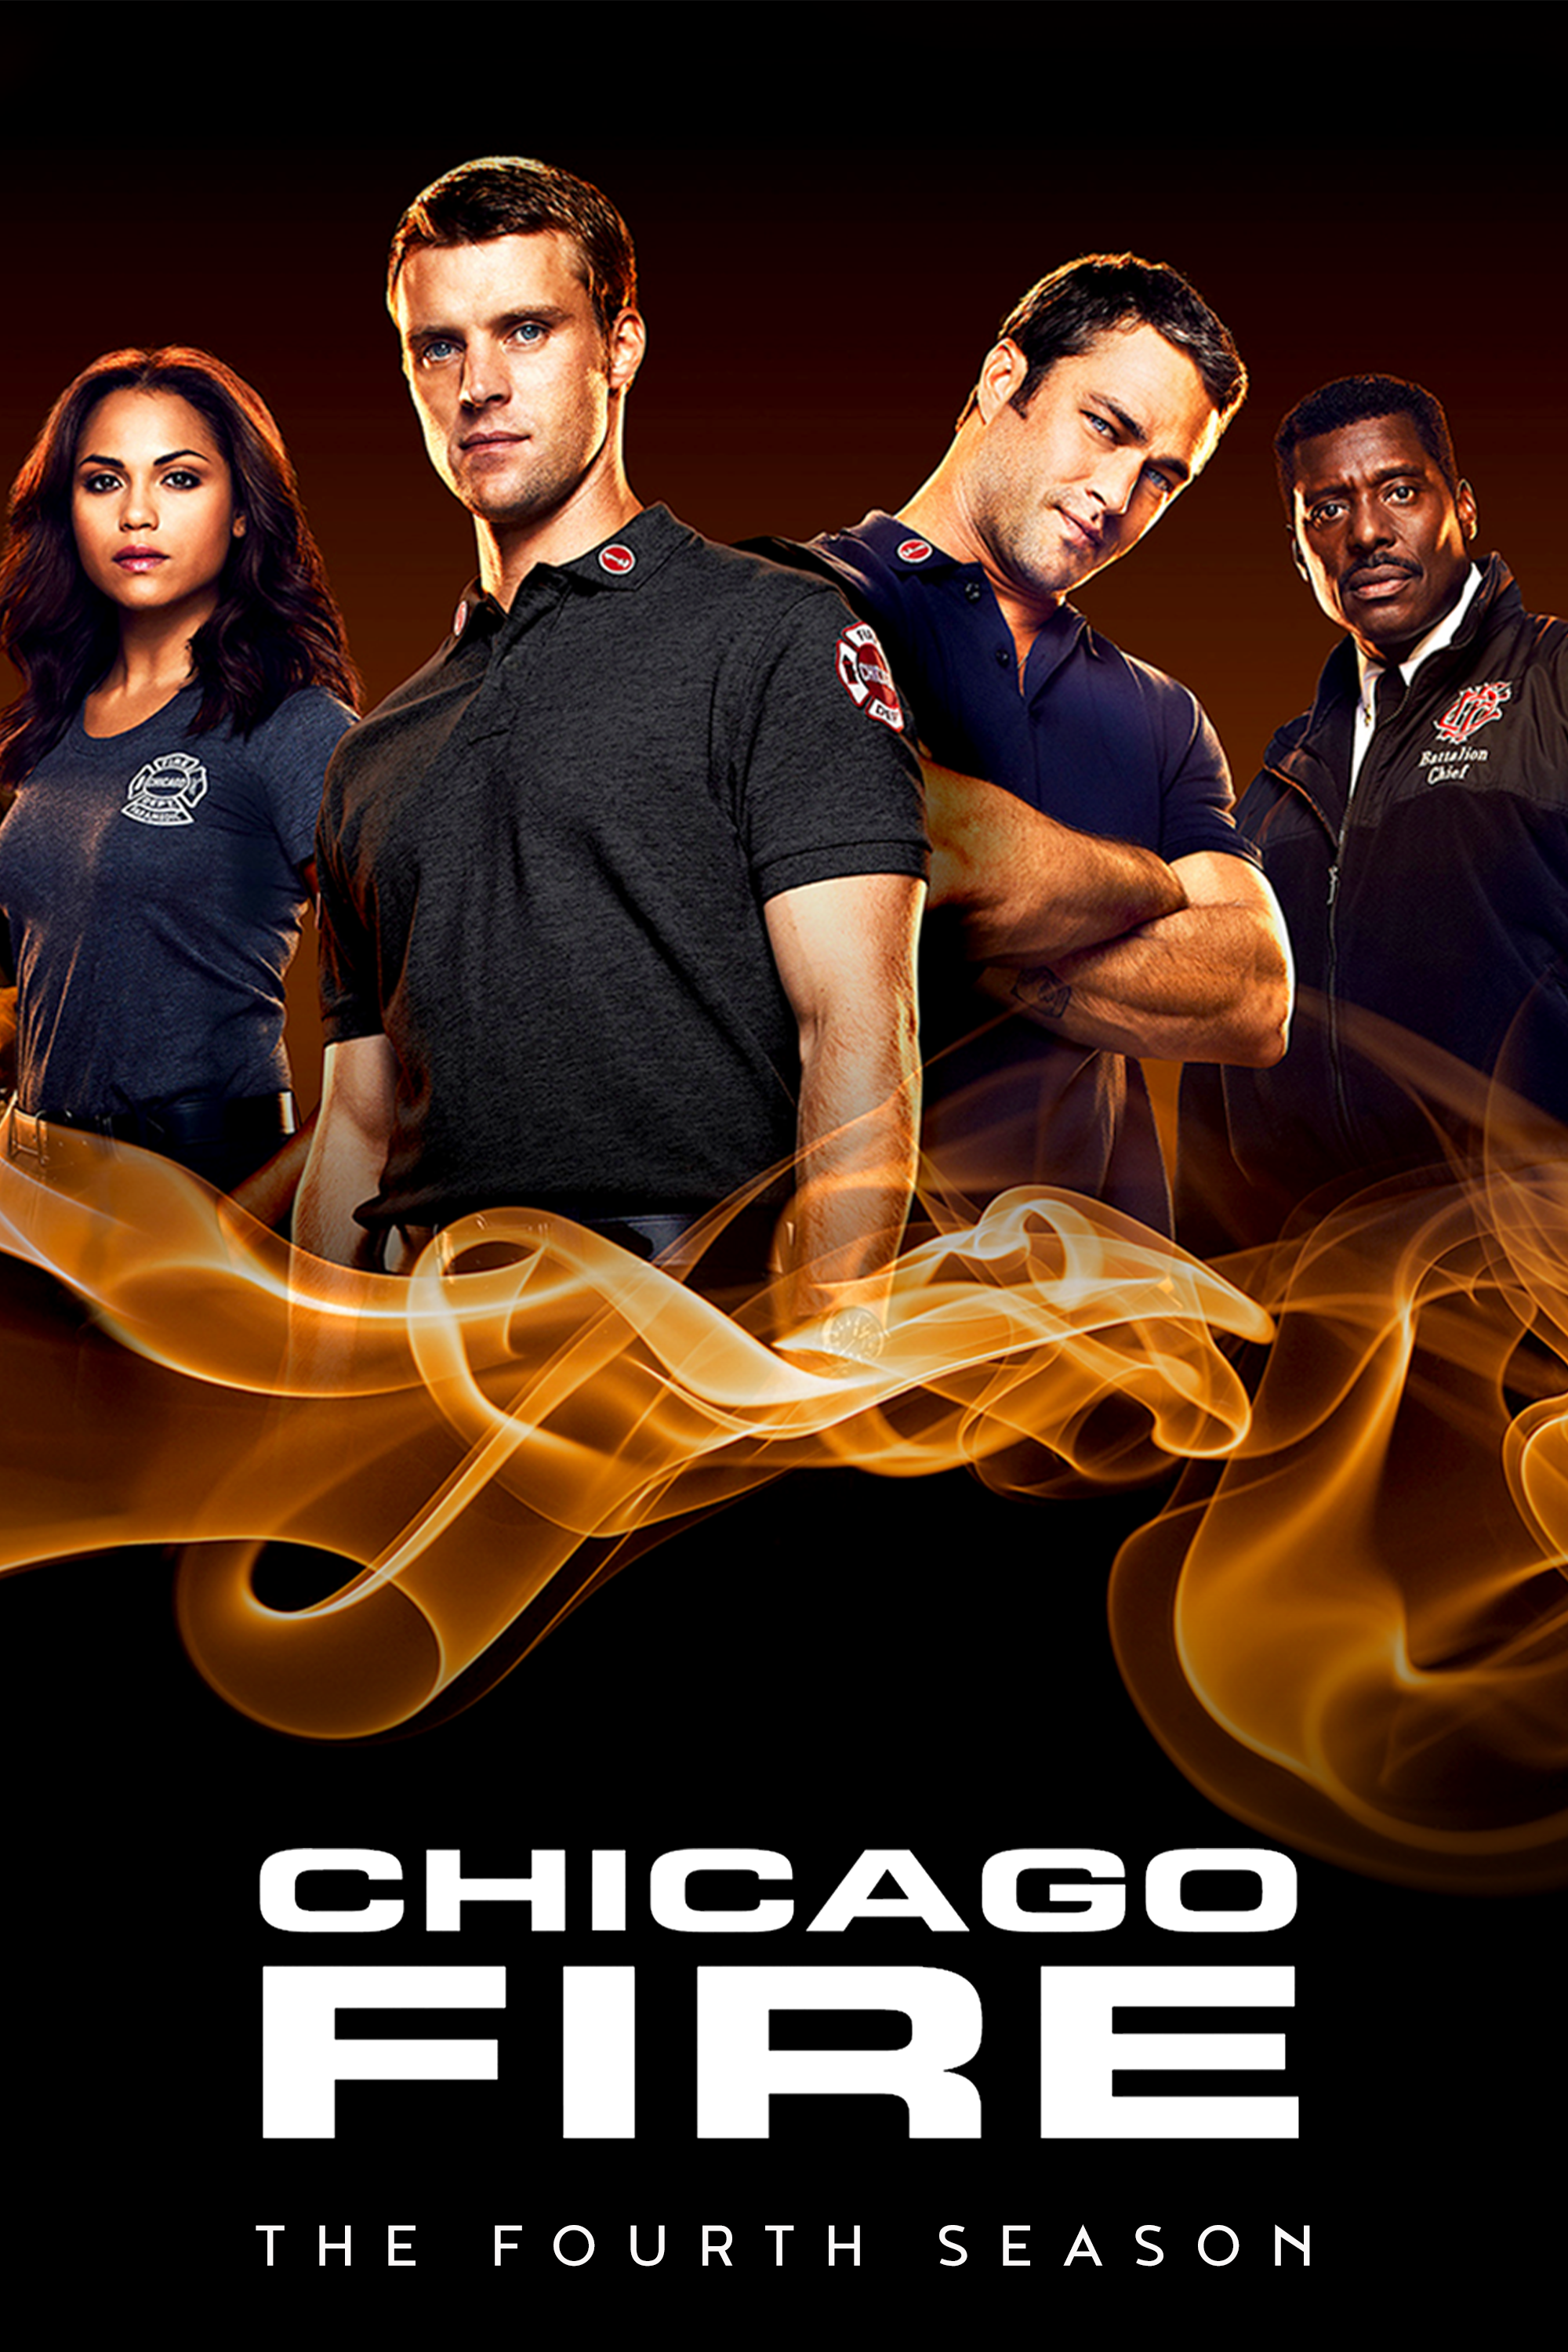 ดูหนังออนไลน์ฟรี Chicago Fire Season 4 EP.1 ชิคาโก้ ไฟร์ หน่วยดับเพลิงท้านรก ซีซั่นที่ 4 ตอนที่ 1